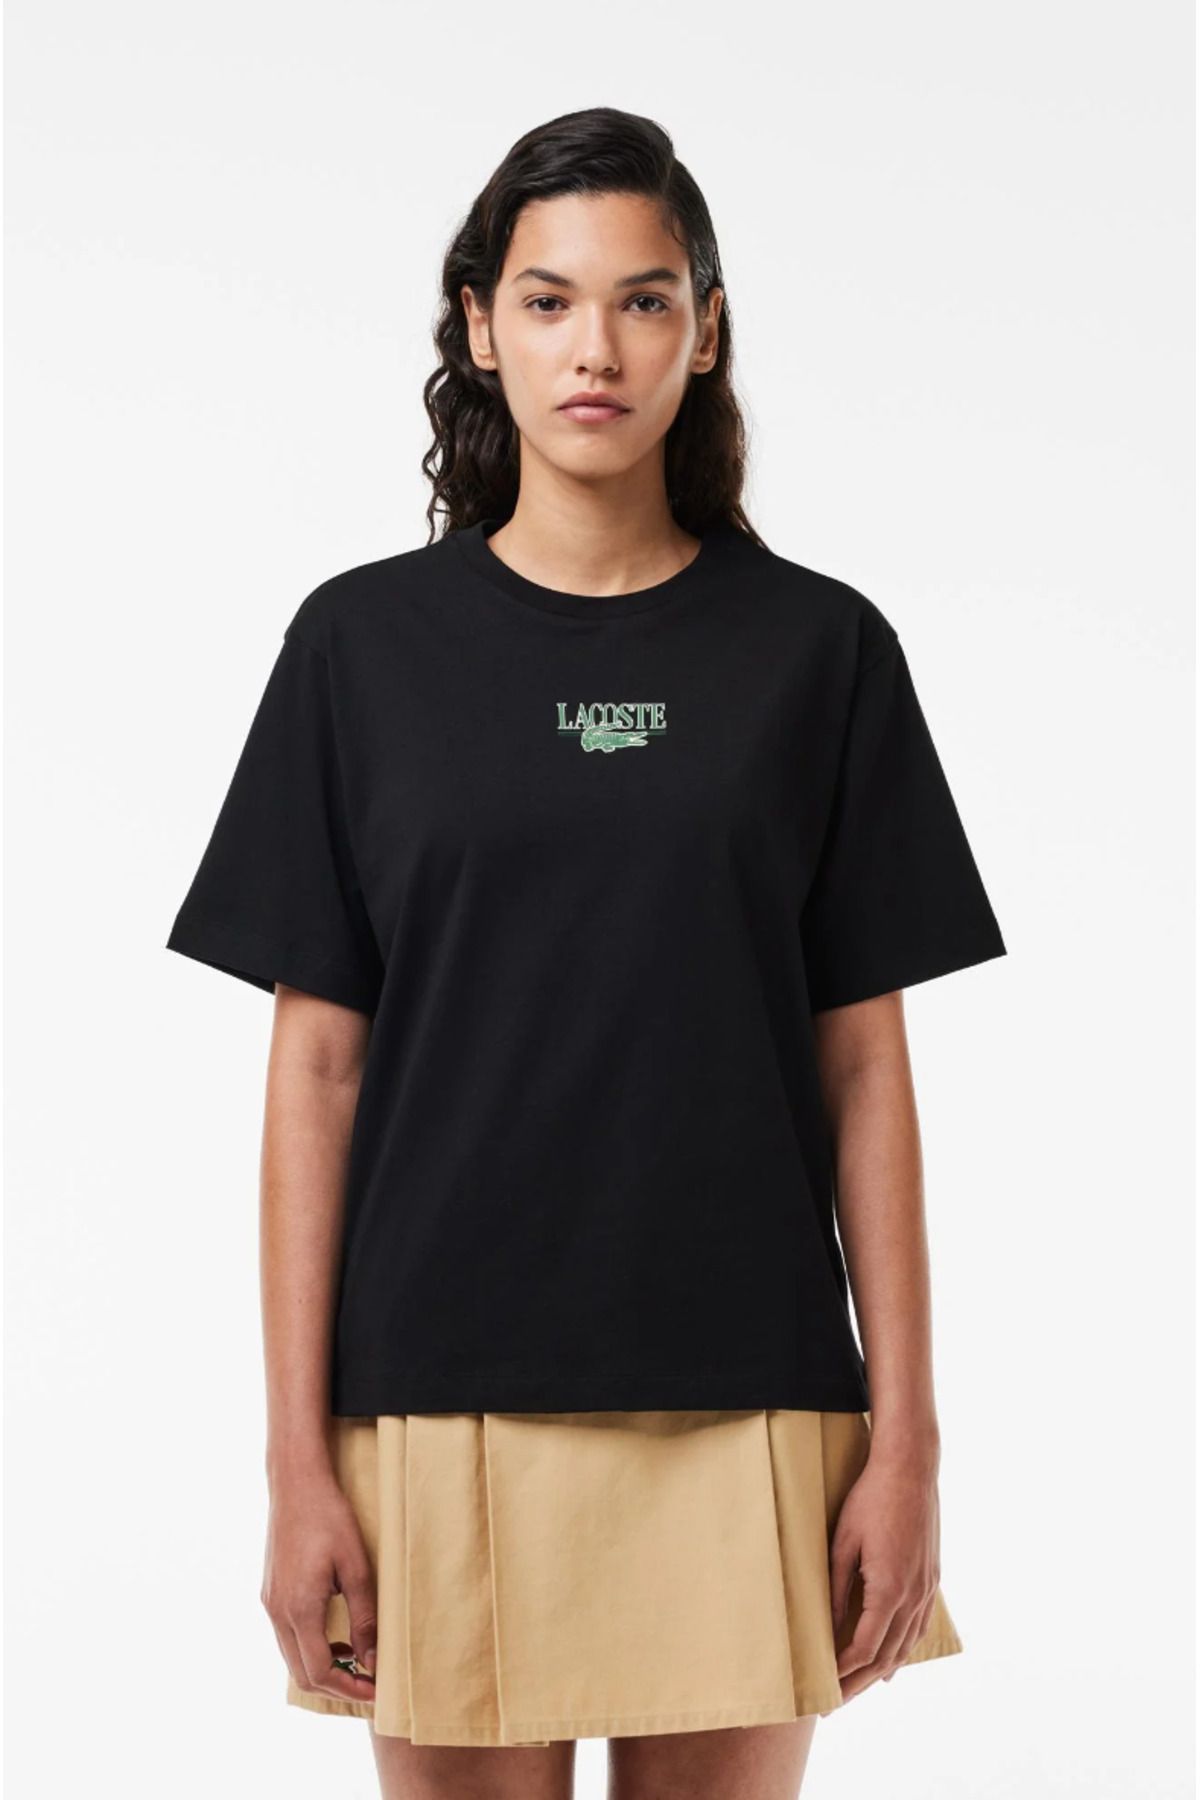 Lacoste Women’s Lacoste Print Cotton Jersey T-shirt